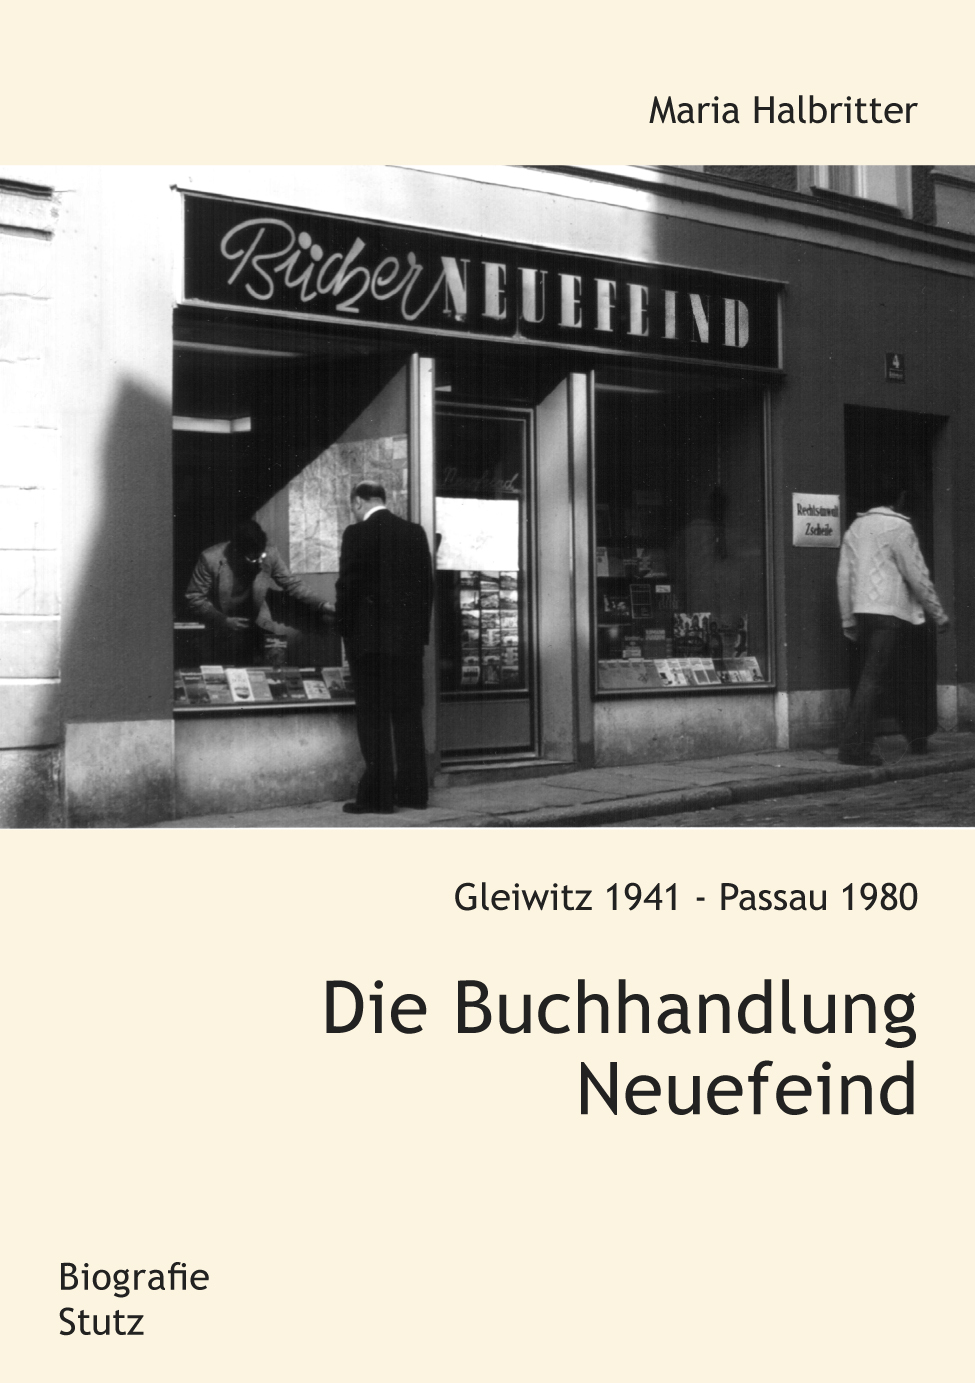 Maria Halbritter: Die Buchhandlung Neuefeind. Gleiwitz 1941 - Passau 1980